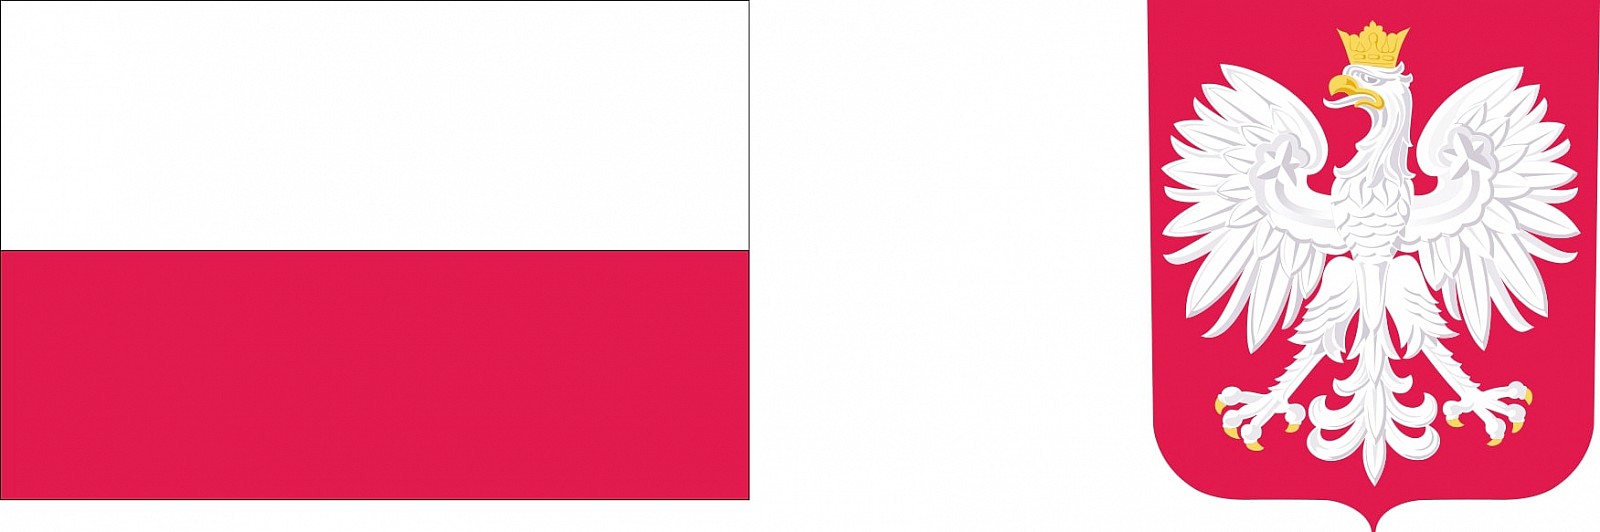 biało czerwona flaga polski oraz godło Polski, orzeł biały w koronie na czerwonym tle.